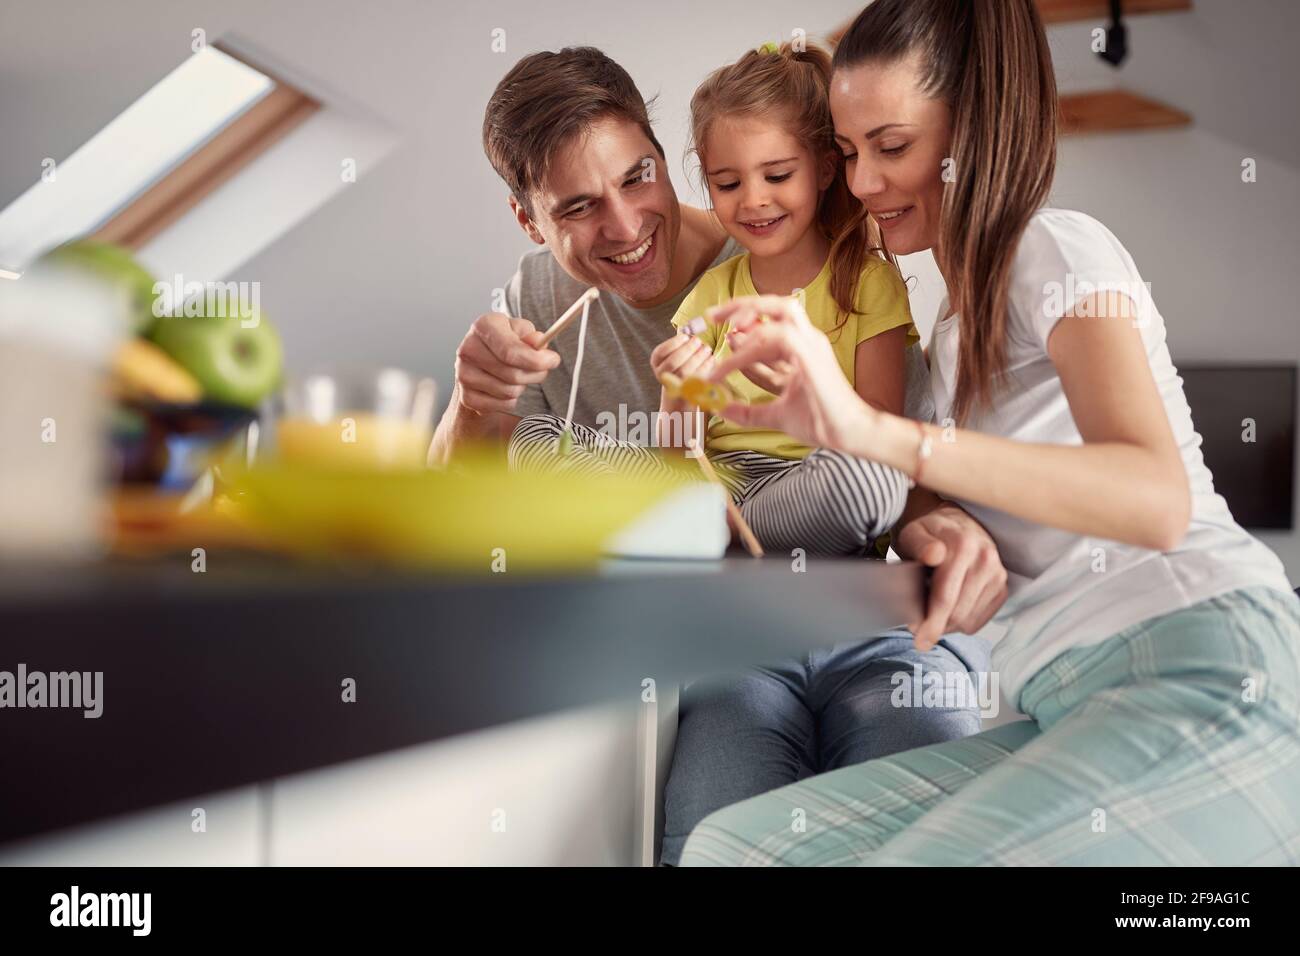 Eine junge Familie, die sich nach einem Frühstück in einer fröhlichen Atmosphäre zu Hause gut Vergnügen kann. Familie, Frühstück, zusammen, Zuhause Stockfoto